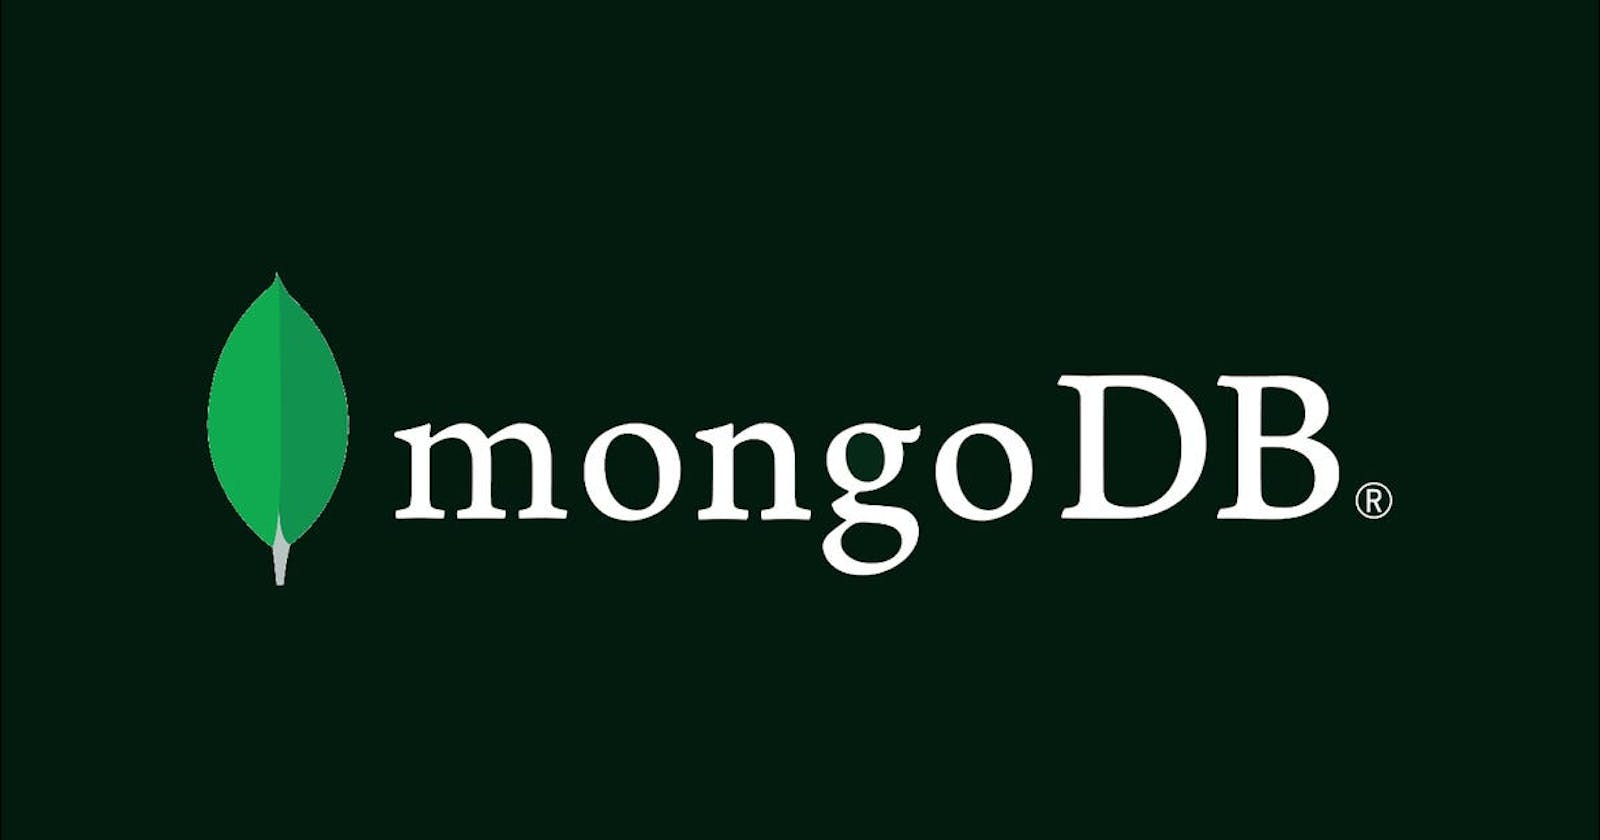 How to use MongoDB